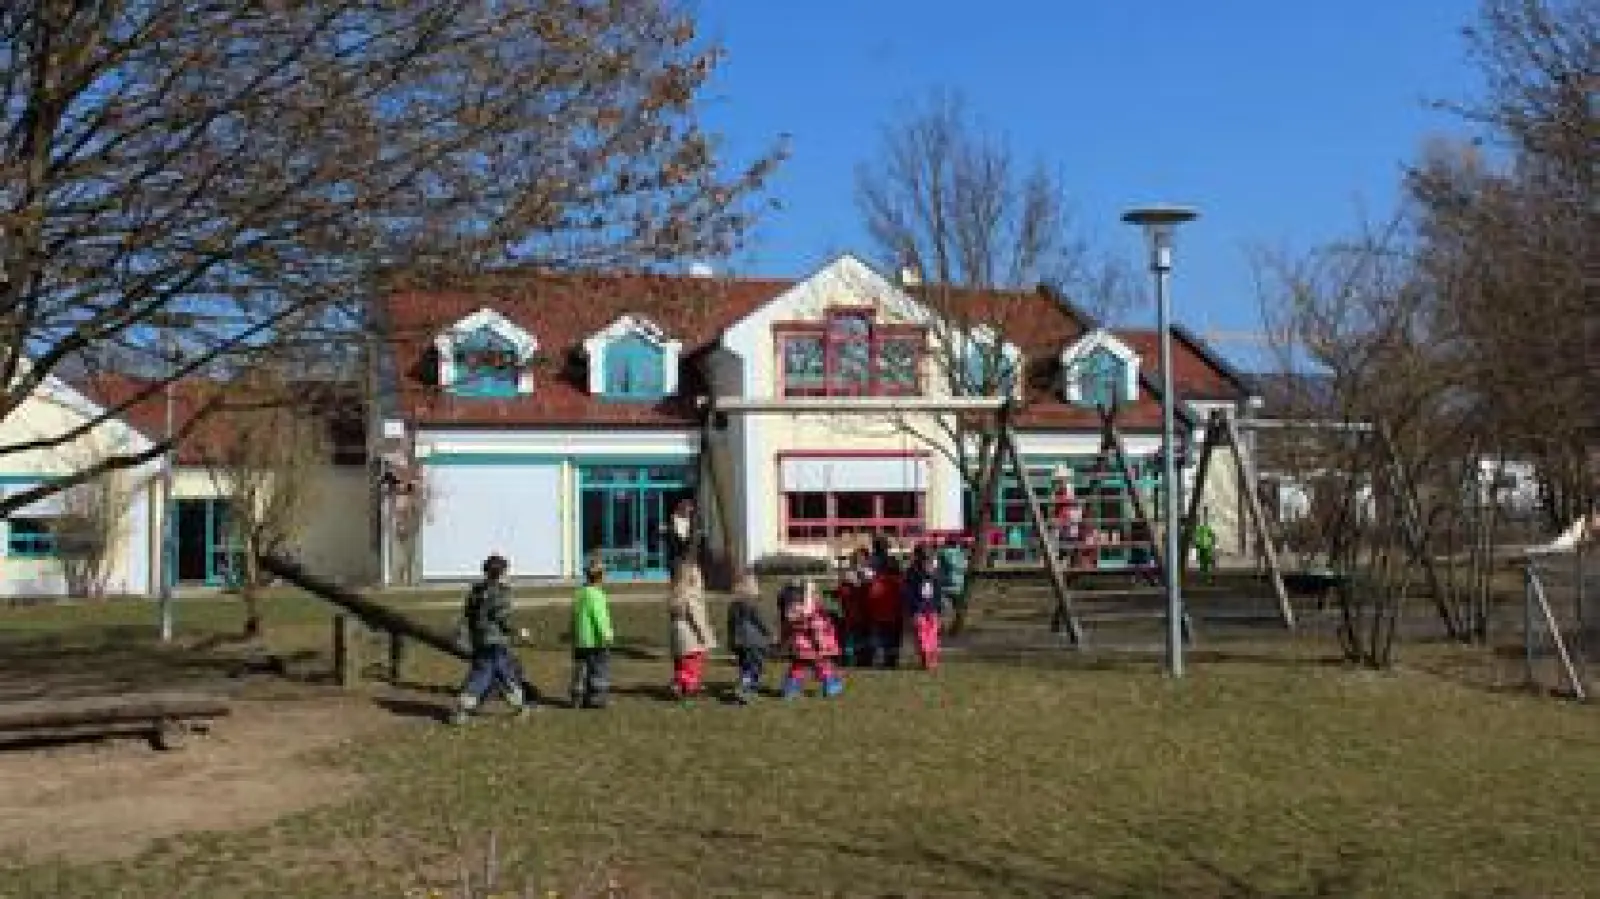 Der Todtenweiser Kindergarten  ist ausgebucht. Eventuell bekommen im Herbst nicht alle, die möchten, einen Platz. 	Foto: Sofia Brandmayr (Foto: Sofia Brandmayr)